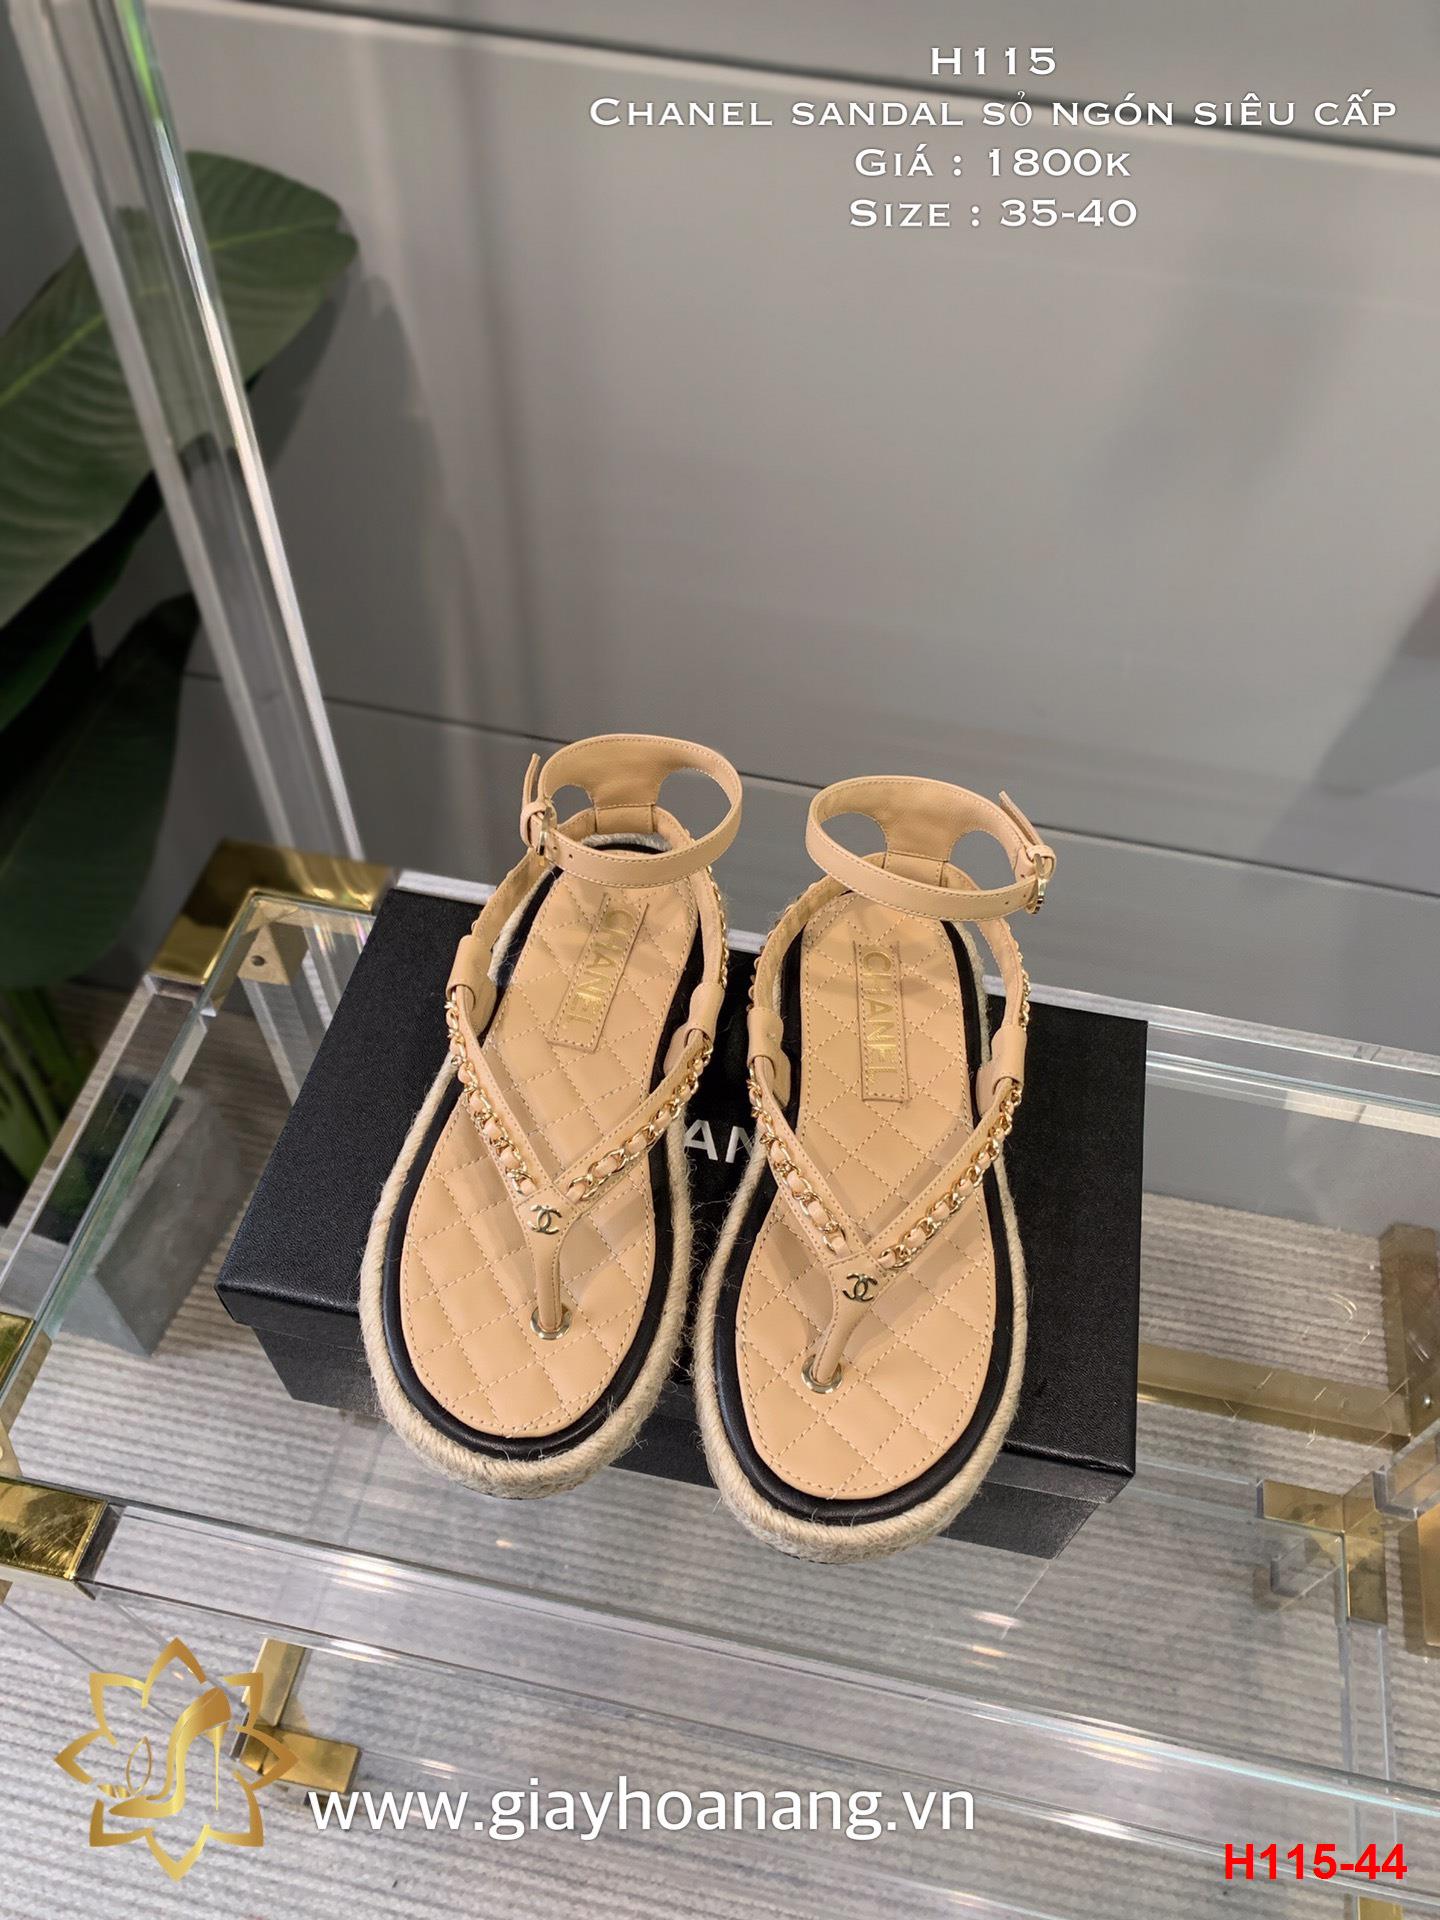 H115-44 Chanel sandal sỏ ngón siêu cấp